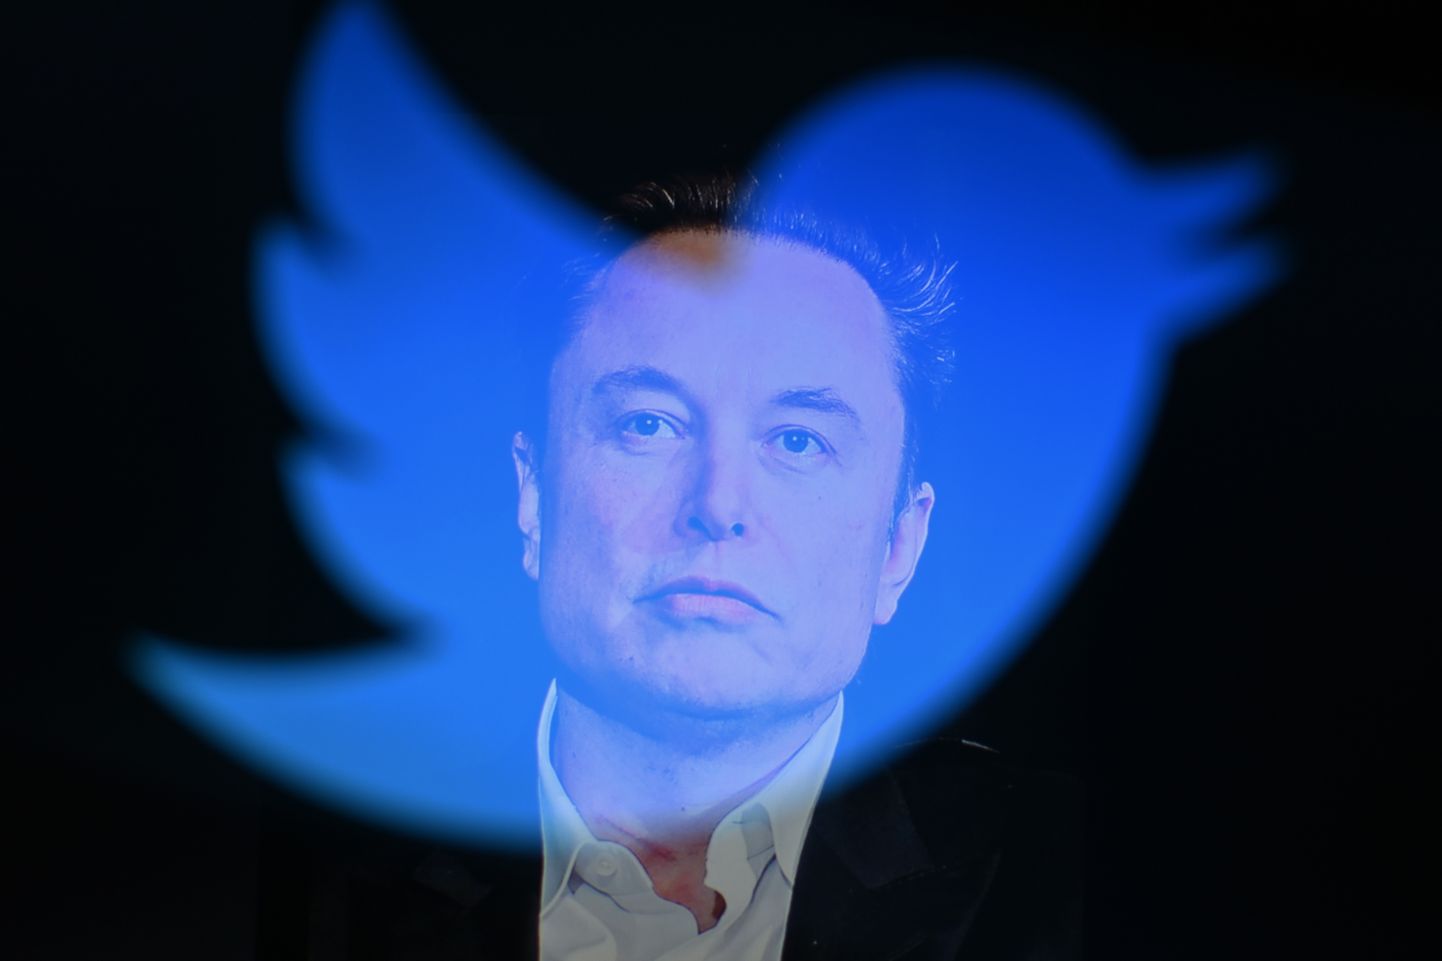 Suurim kaotaja oli Elon Musk. Tema vara väärtuse kahanemise üheks põhjuseks oli ka Twitterile kulunud energia, mis jättis Tesla tahaplaanile.